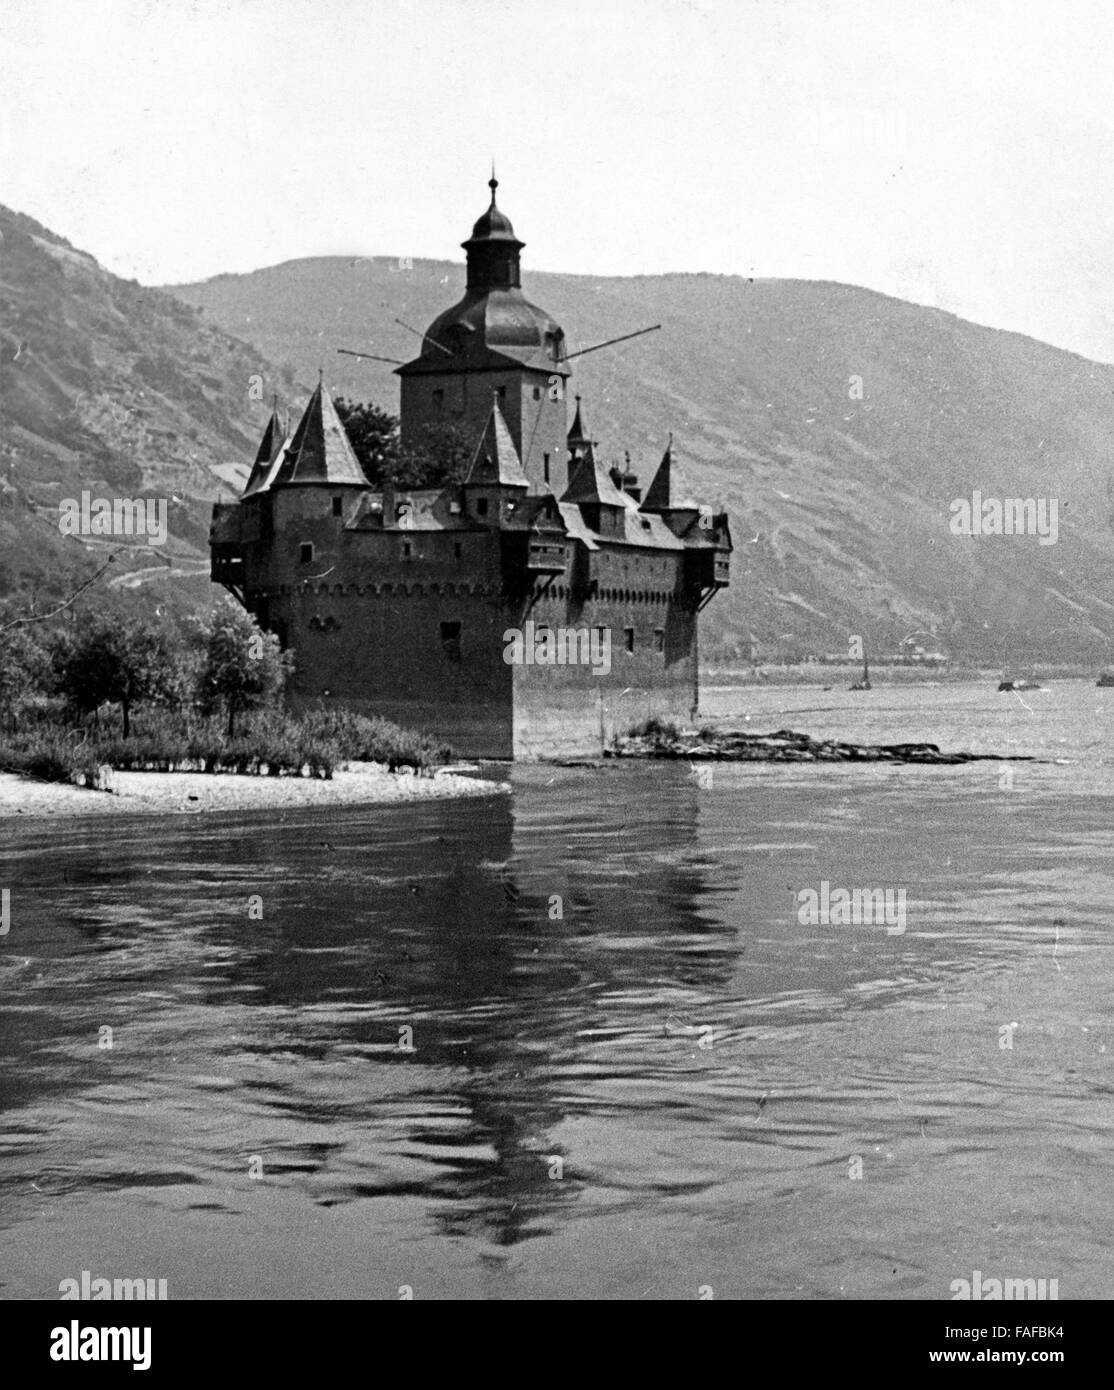 Sterben Sie Burg Pfalzgrafenstein Im Rhein Bei Kaub, Deutschland 1930er Jahre. Burg Pfalzgrafenstein bei Kaub am Fluss Rhein, Deutschland der 1930er Jahre. Stockfoto